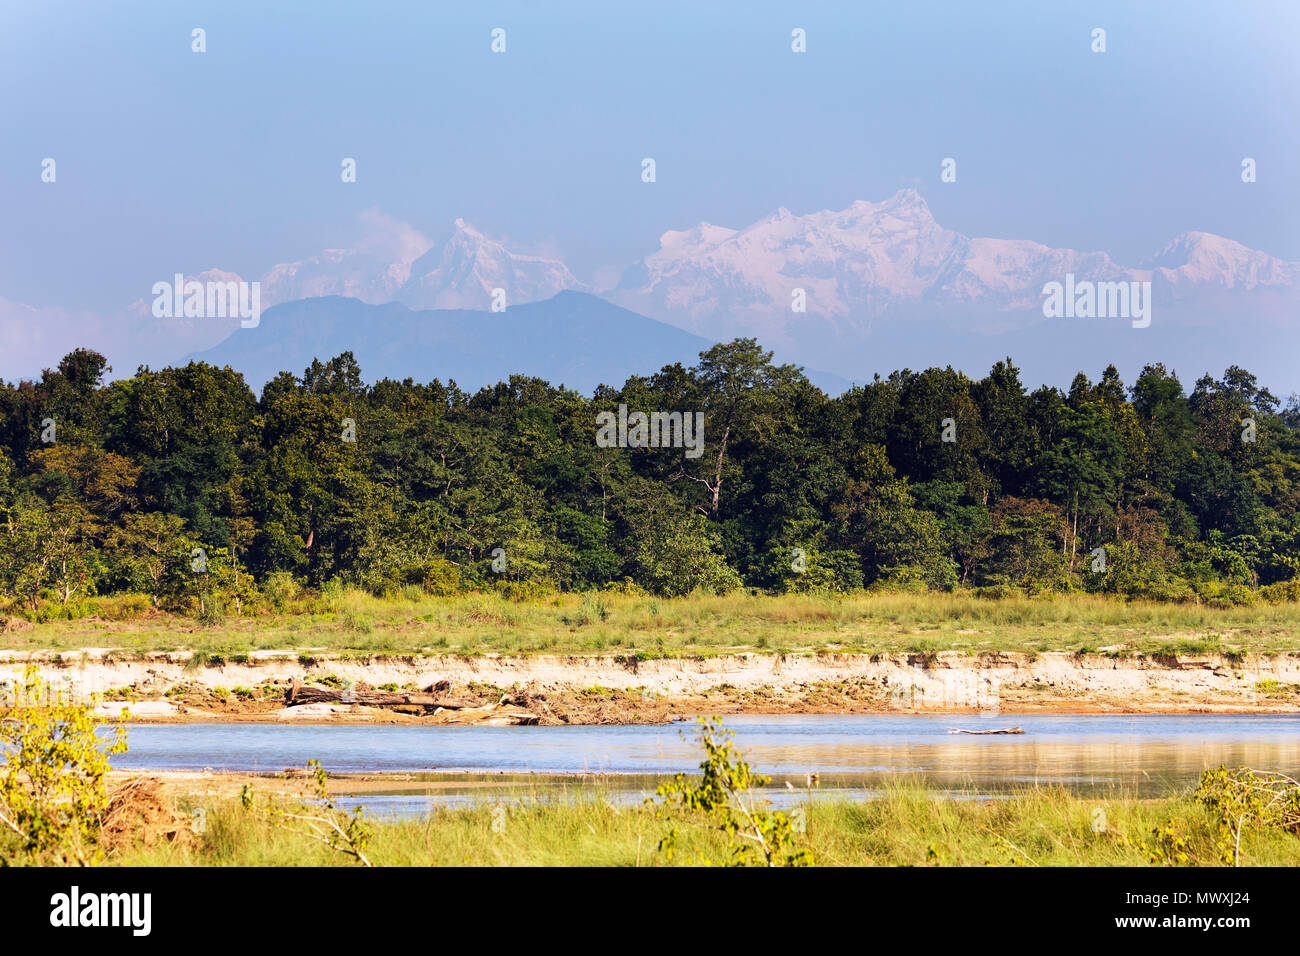 Il Manaslu mountain range rising 8000m plus in Himalaya, sopra la pianura del Terai, Chitwan il parco nazionale, sito Patrimonio Mondiale dell'UNESCO, Nepal, Asia Foto Stock